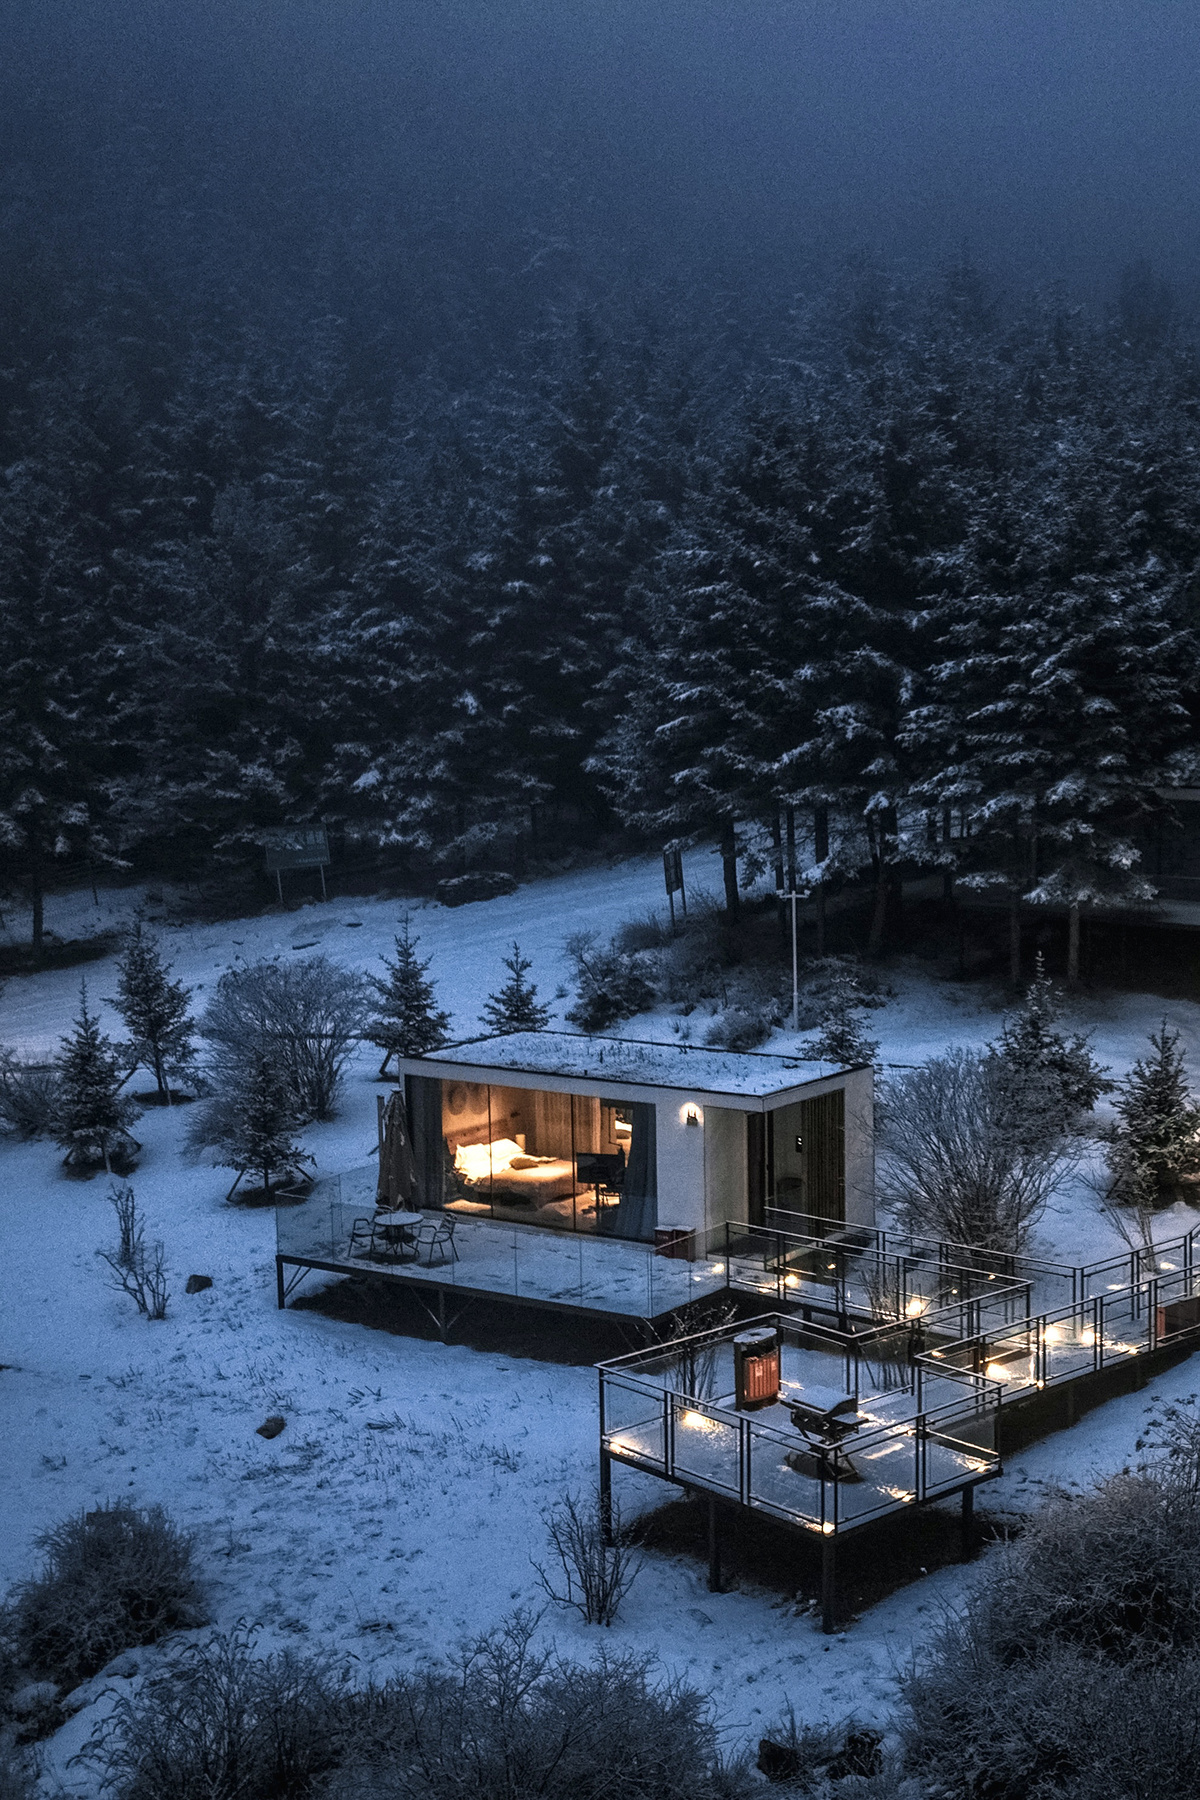 一个夜晚的雪林小屋 地面铺满雪